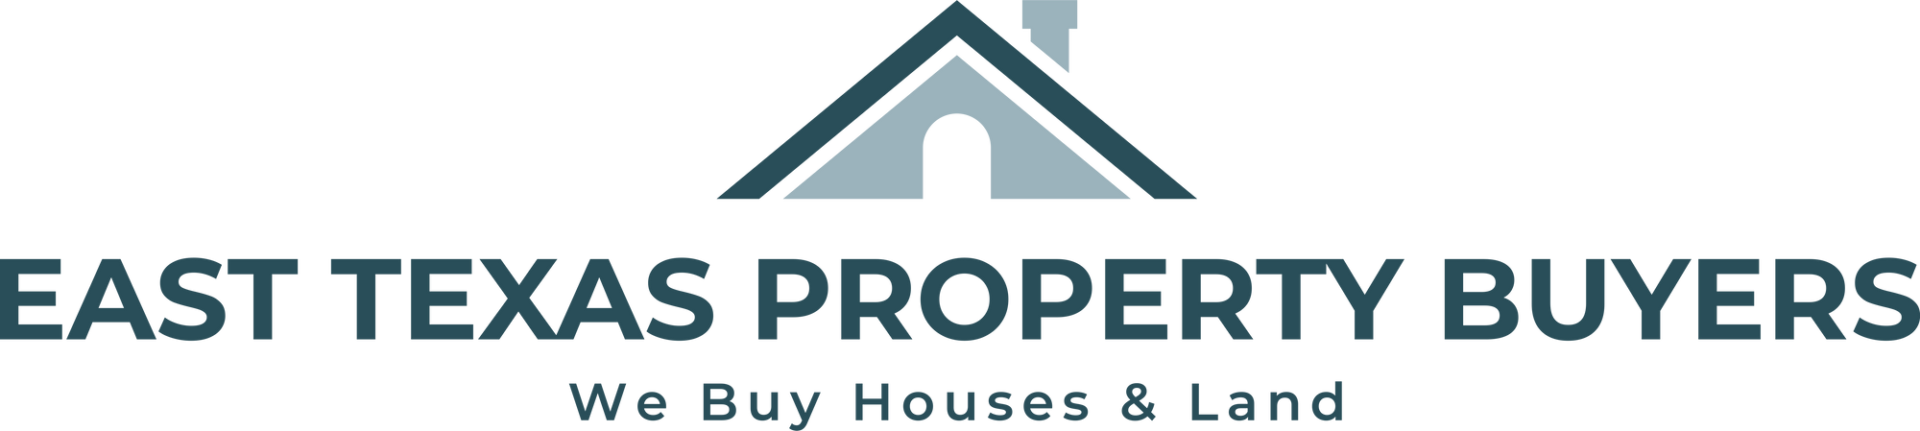 East Texas Property Buyers, LLC logo